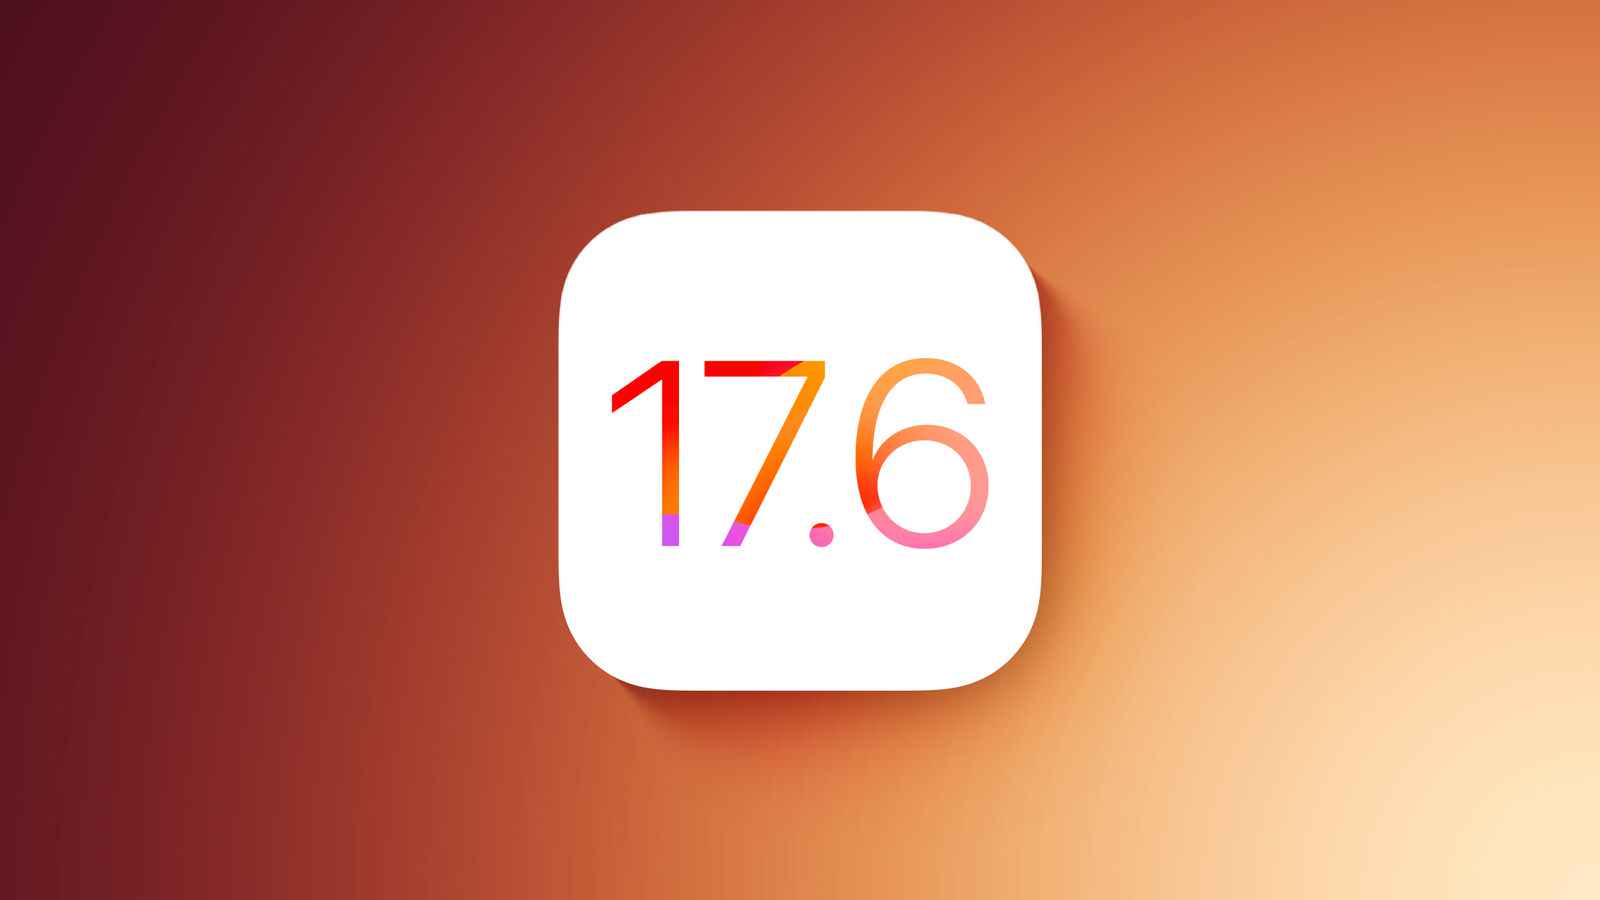 苹果向公测用户发布iOS 17.6和iPadOS 17.6第一个测试版 第1张